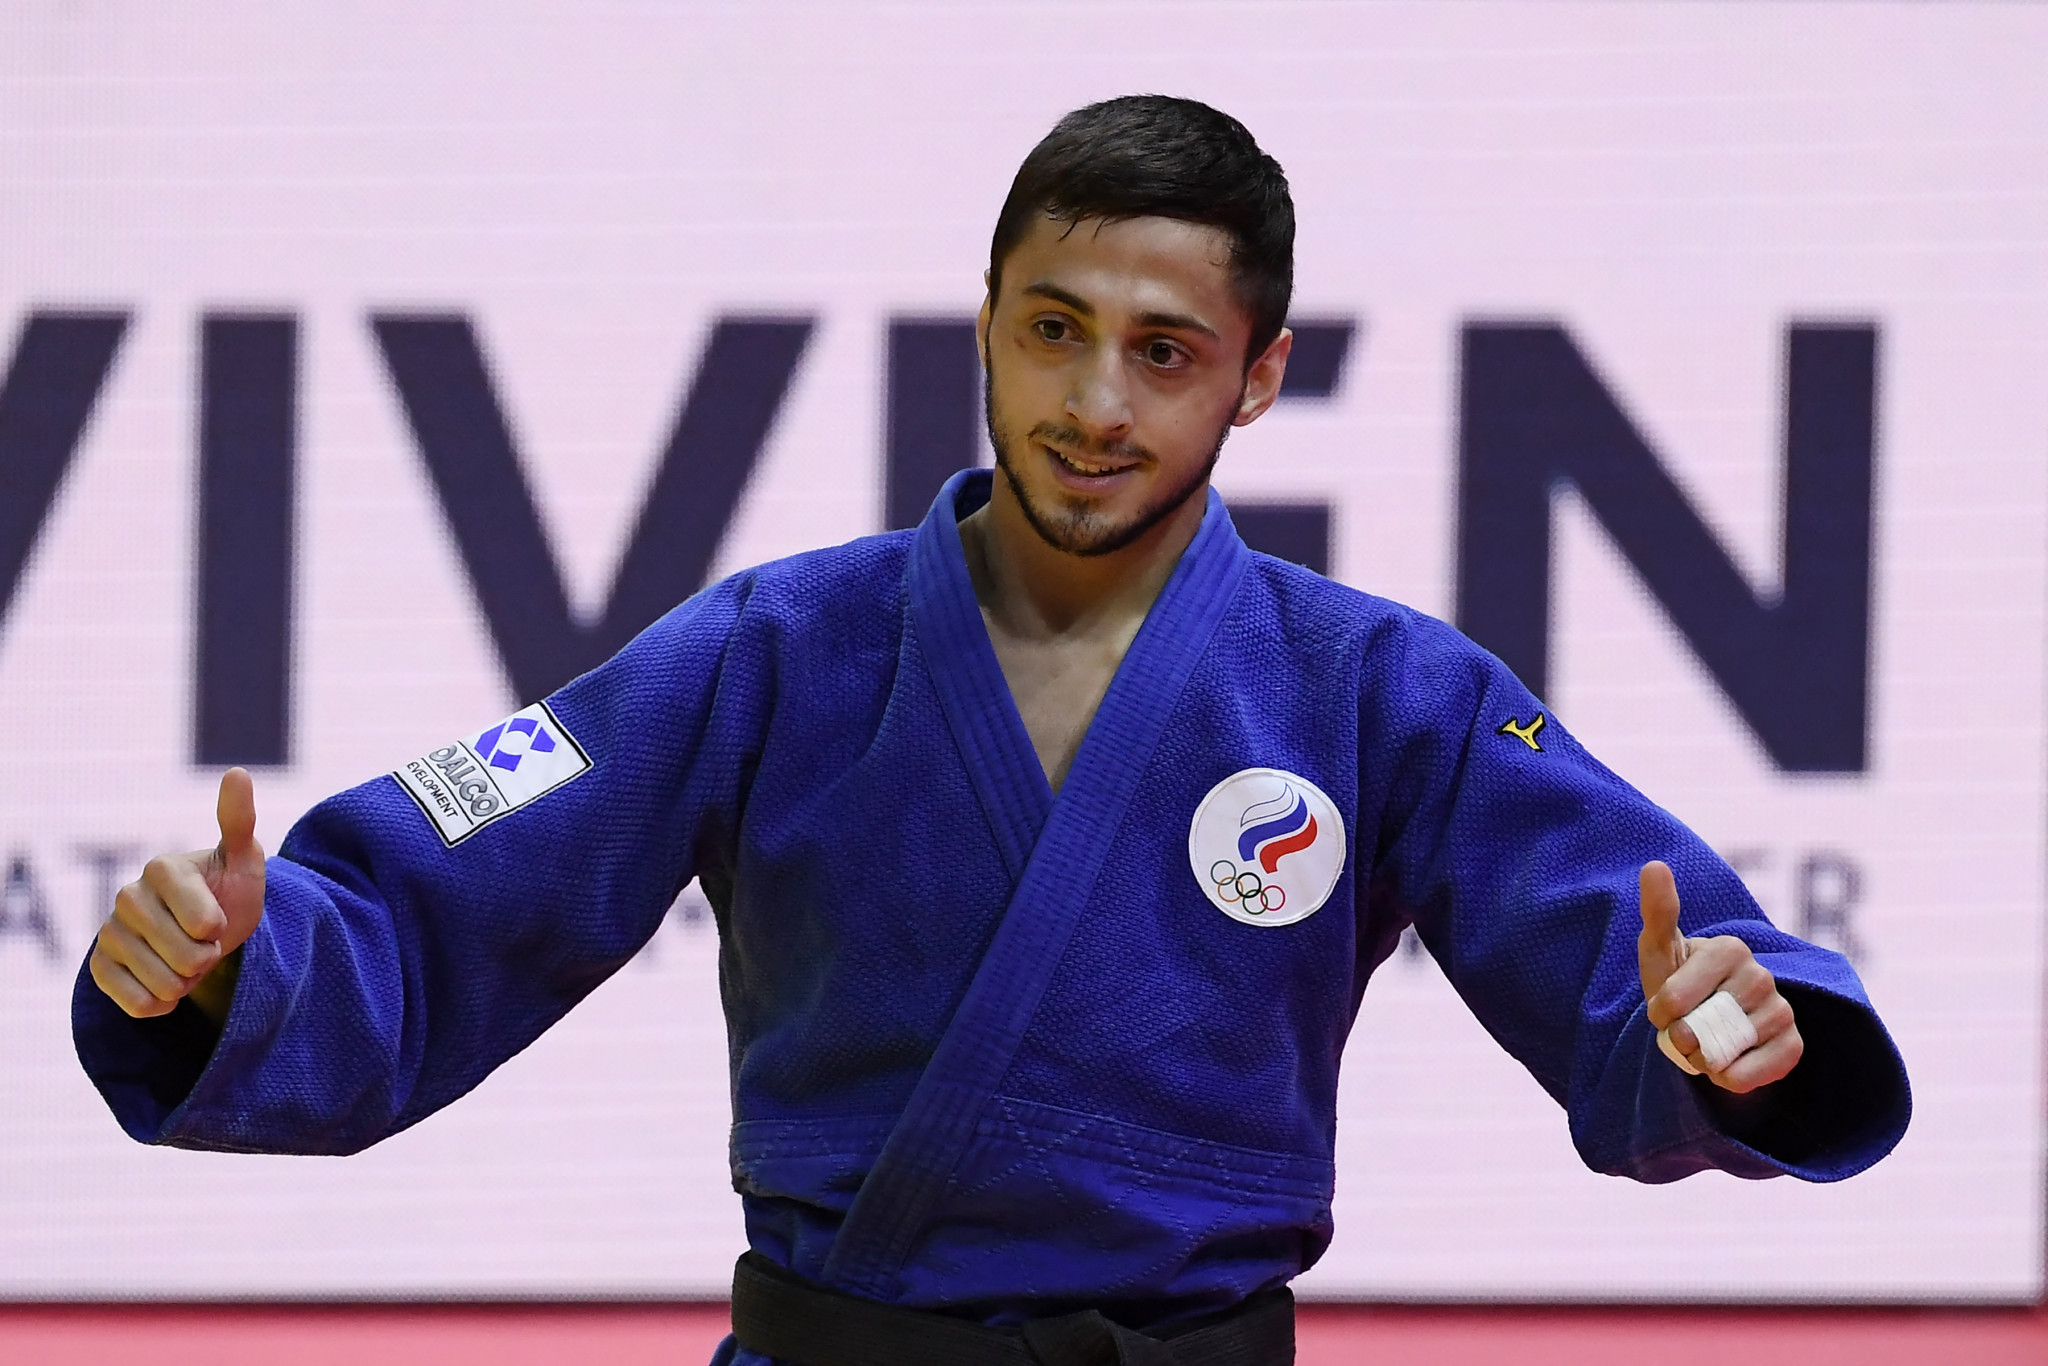 Judo world champion Abuladze shows support for war in Ukraine